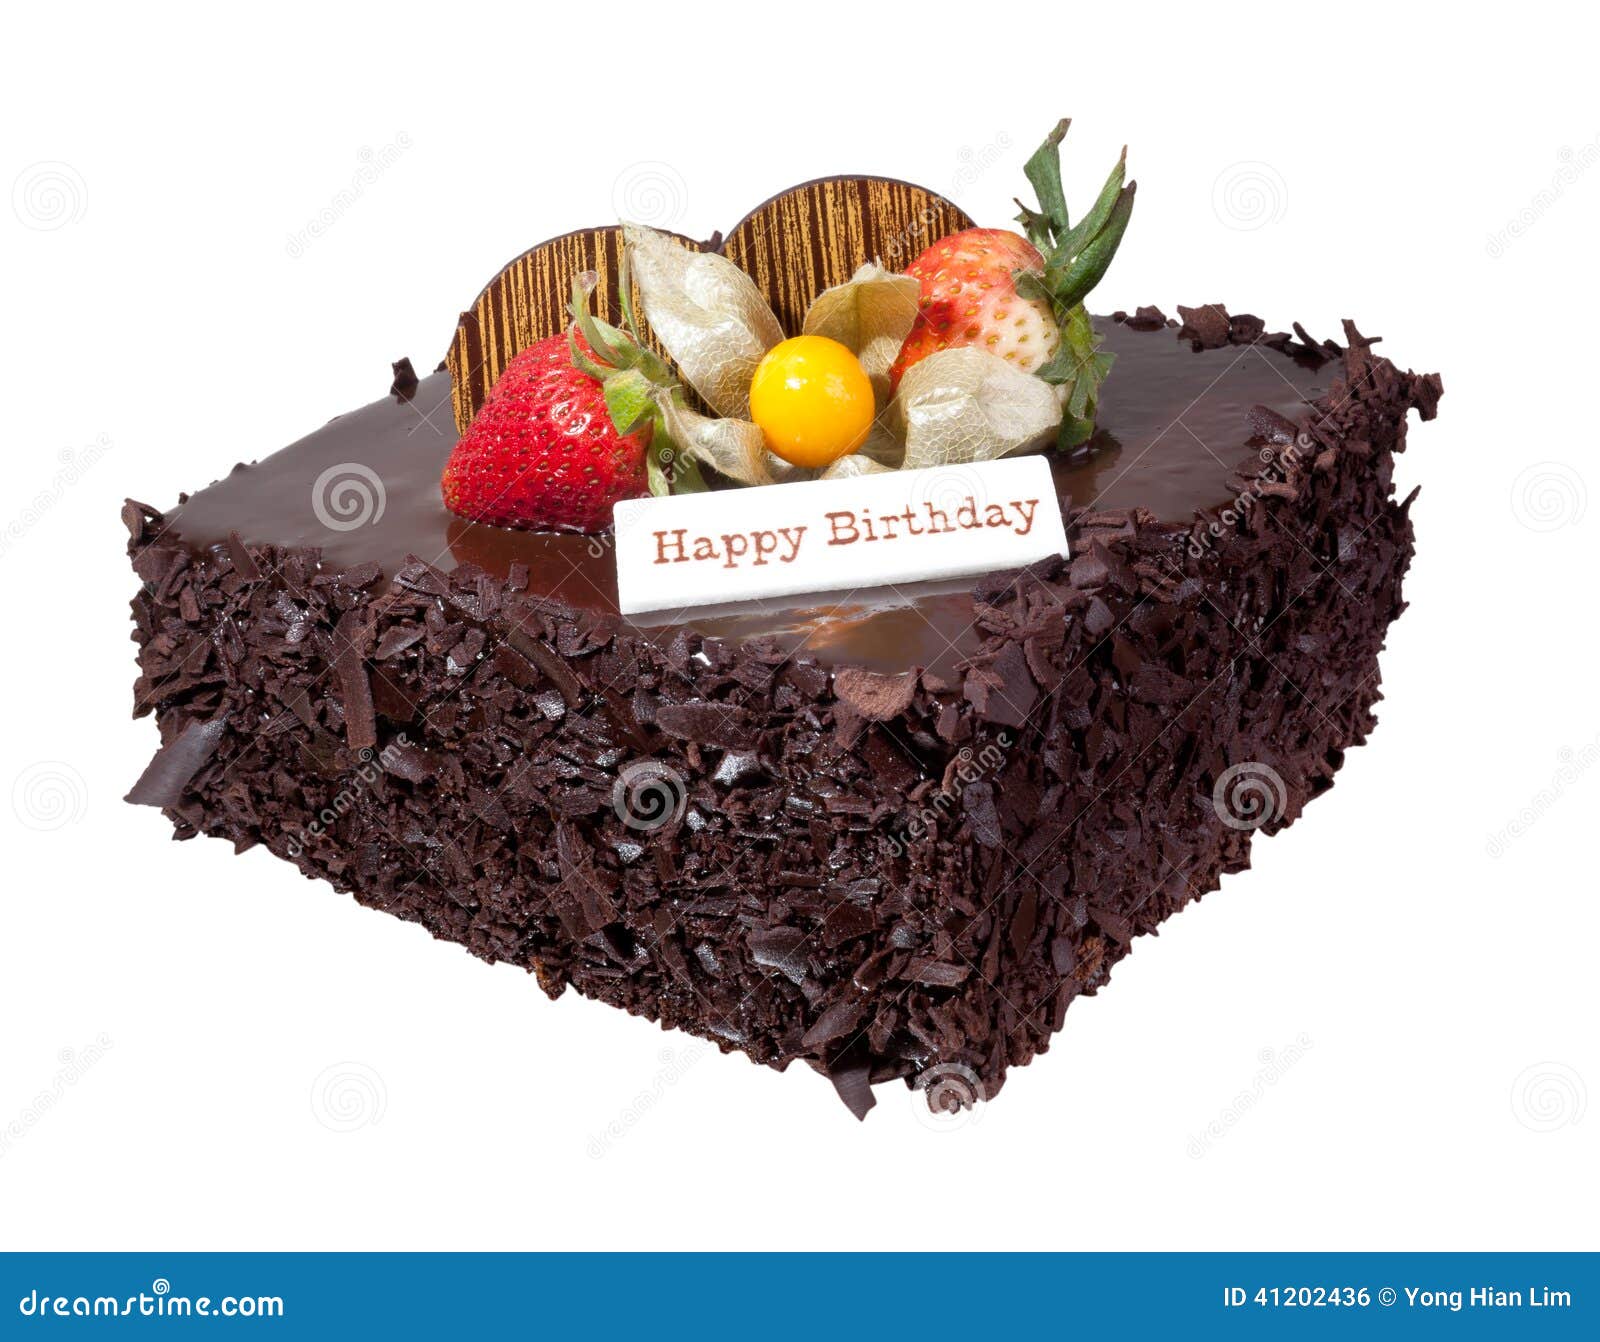 巧克力生日蛋糕矢量素材免费下载 - 觅知网